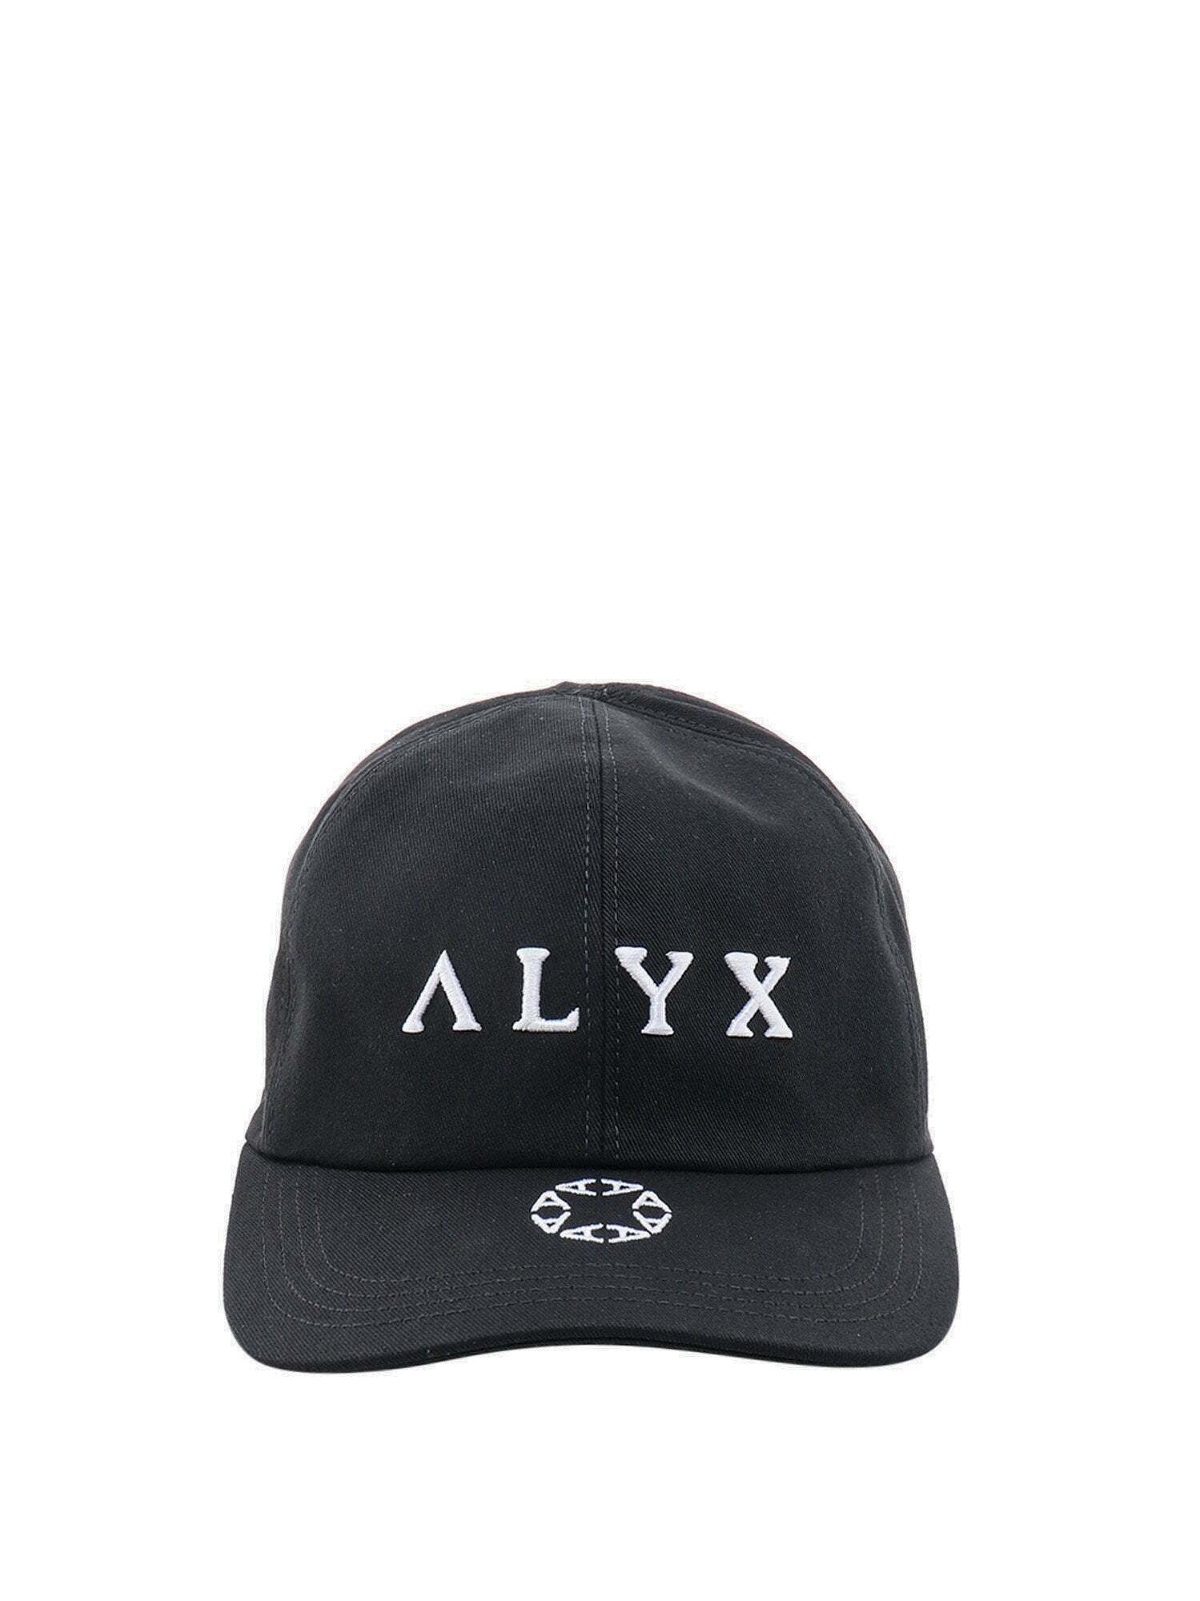 Alyx Hat Black Mens 1017 ALYX 9SM